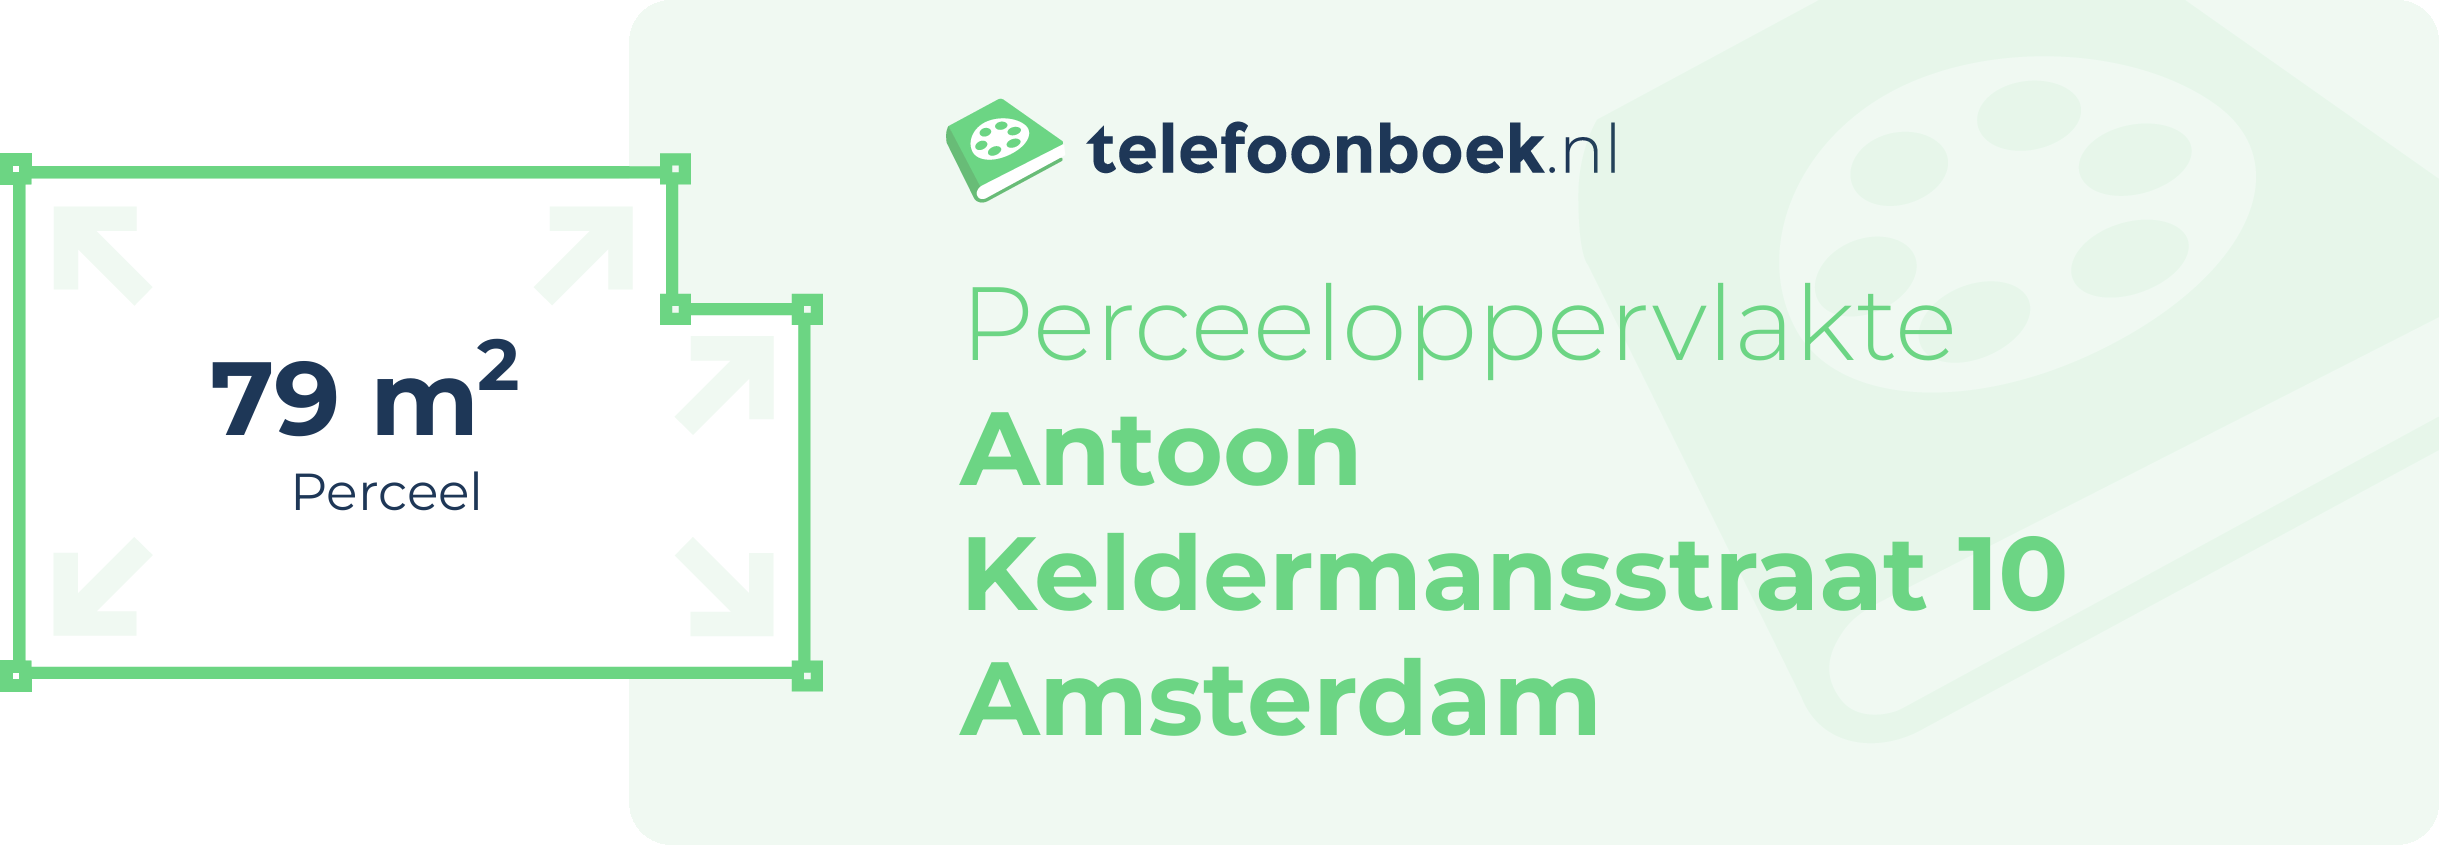 Perceeloppervlakte Antoon Keldermansstraat 10 Amsterdam